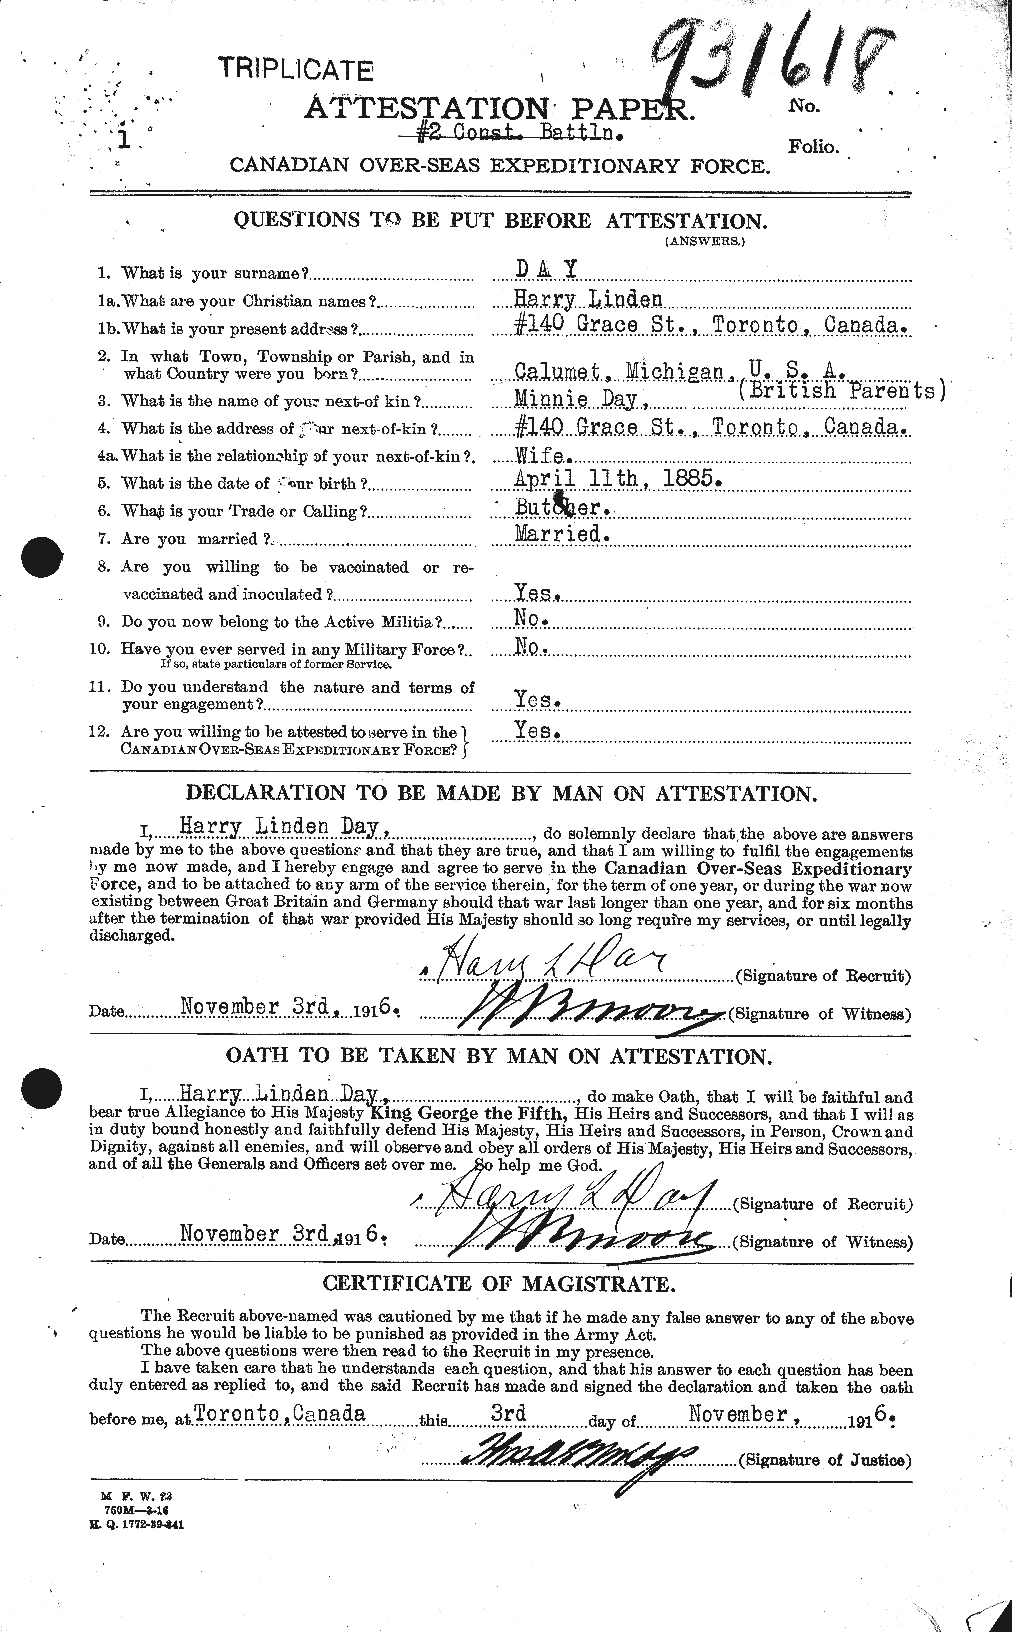 Dossiers du Personnel de la Première Guerre mondiale - CEC 279135a